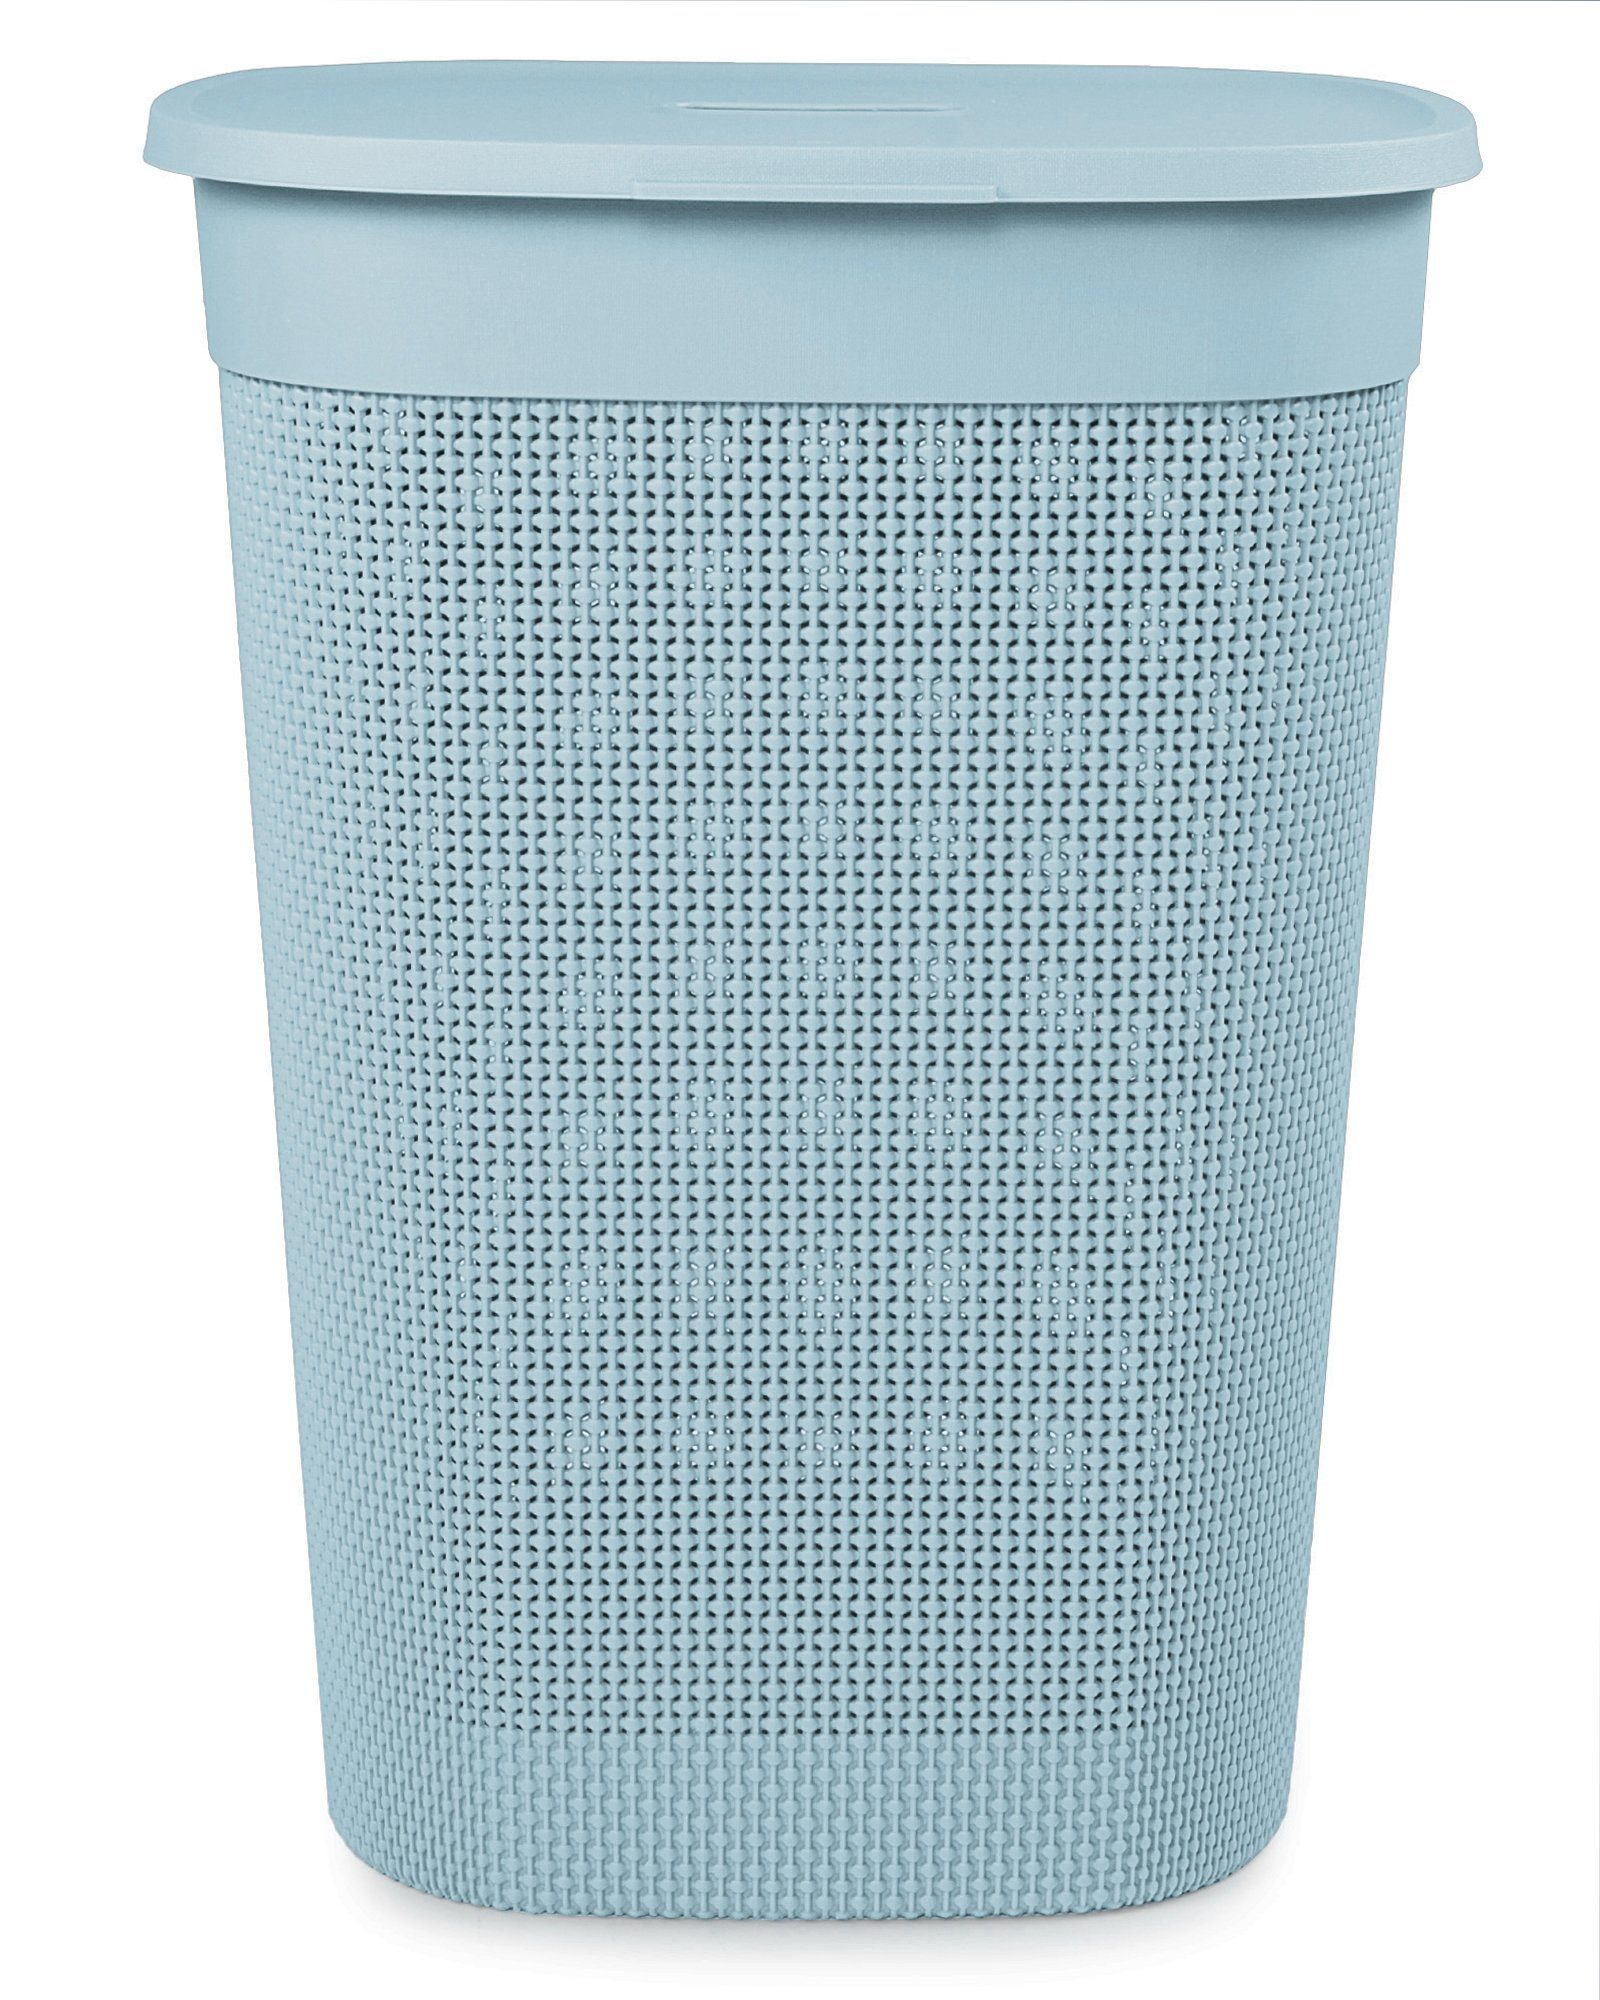 Wäschebox Kunststoff 55 edle Verarbeitung Wäschekorb italienisches aus Design, gut ONDIS24 Blau Filo Liter, belüftet, neues